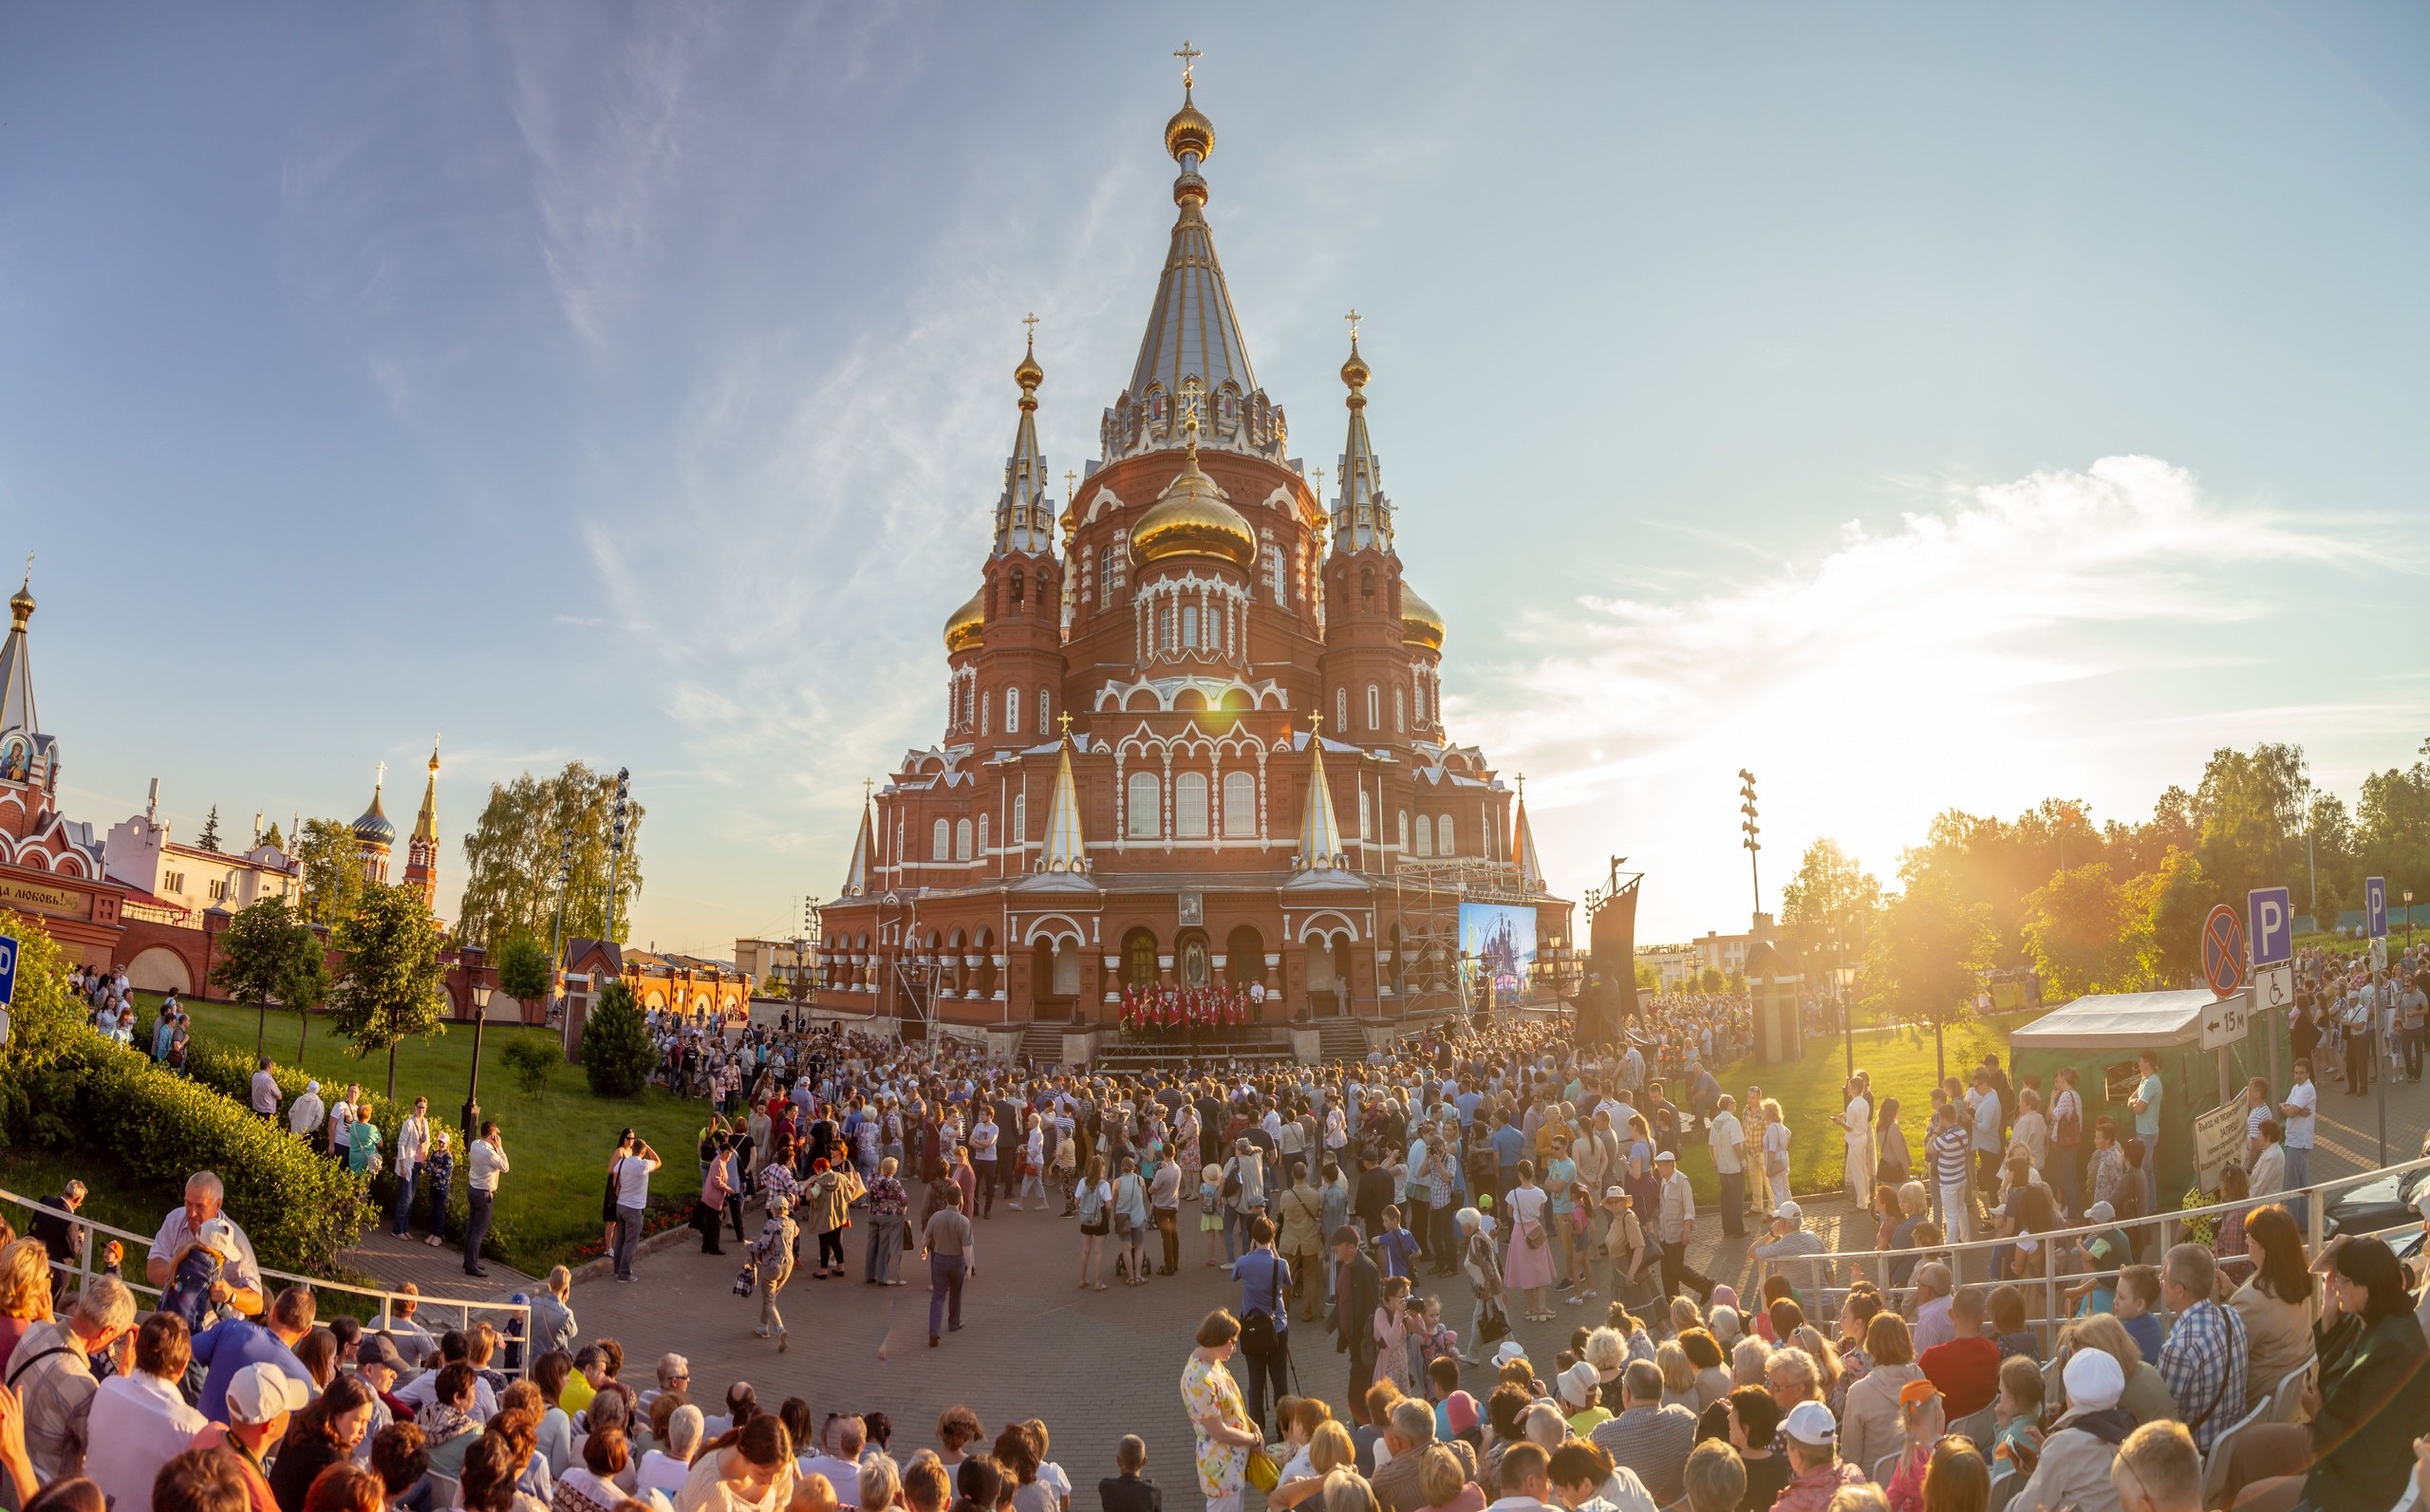 

Накануне дня города в Ижевске пройдет Большой хоровой собор

